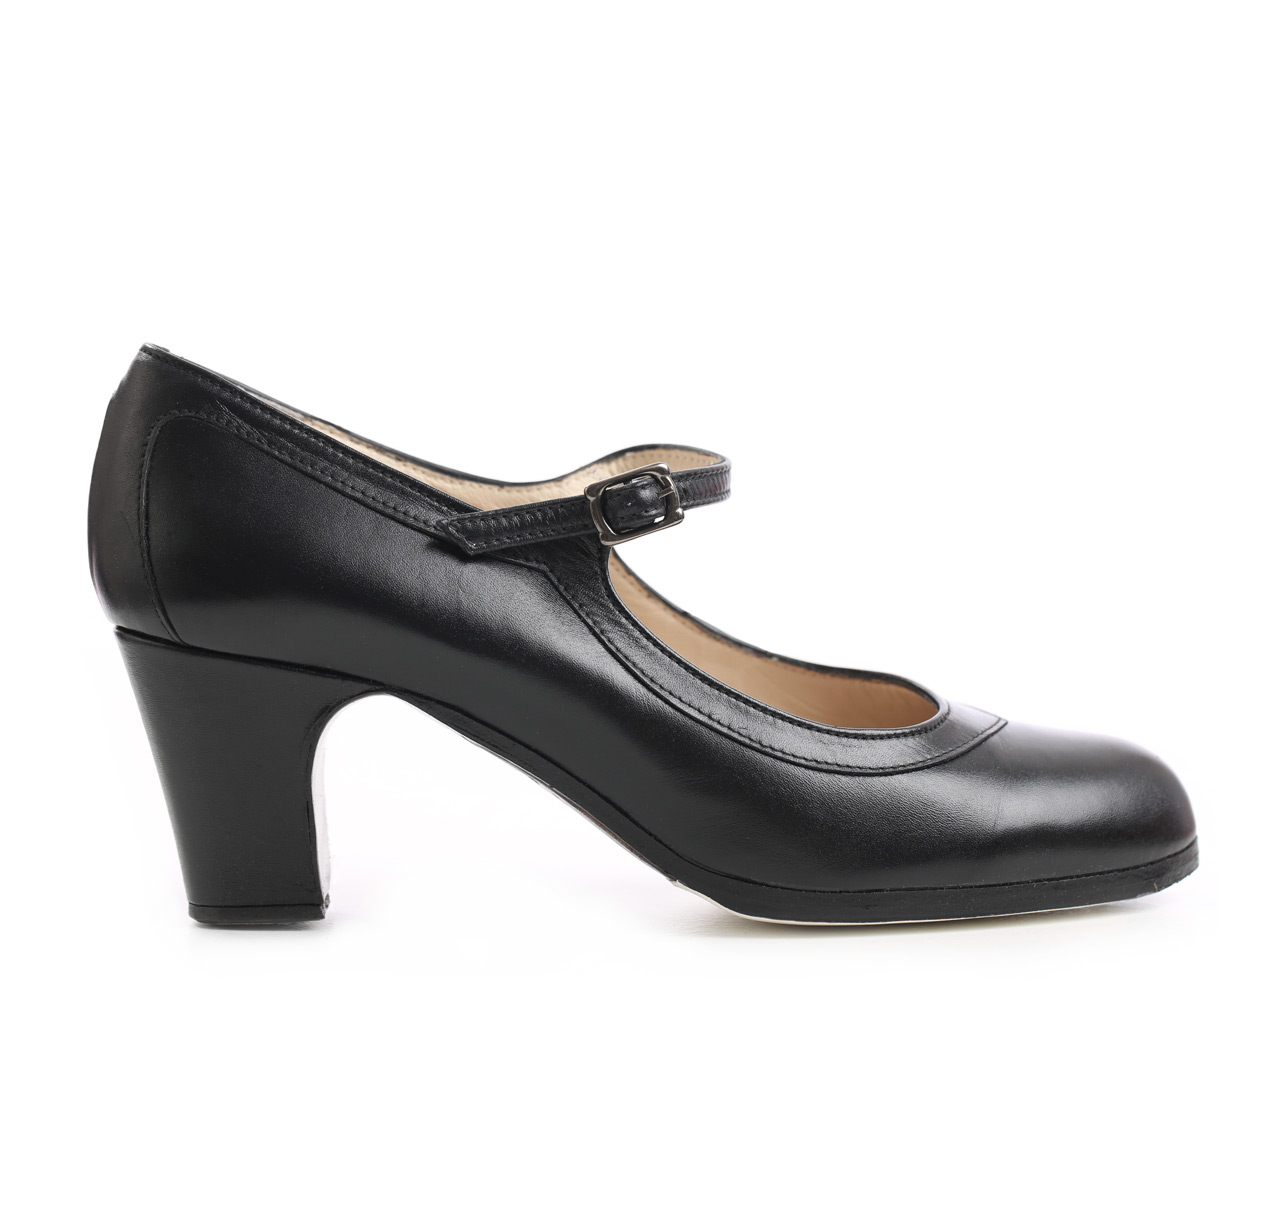 Chaussures Flamenco Salon Correa cuir noir